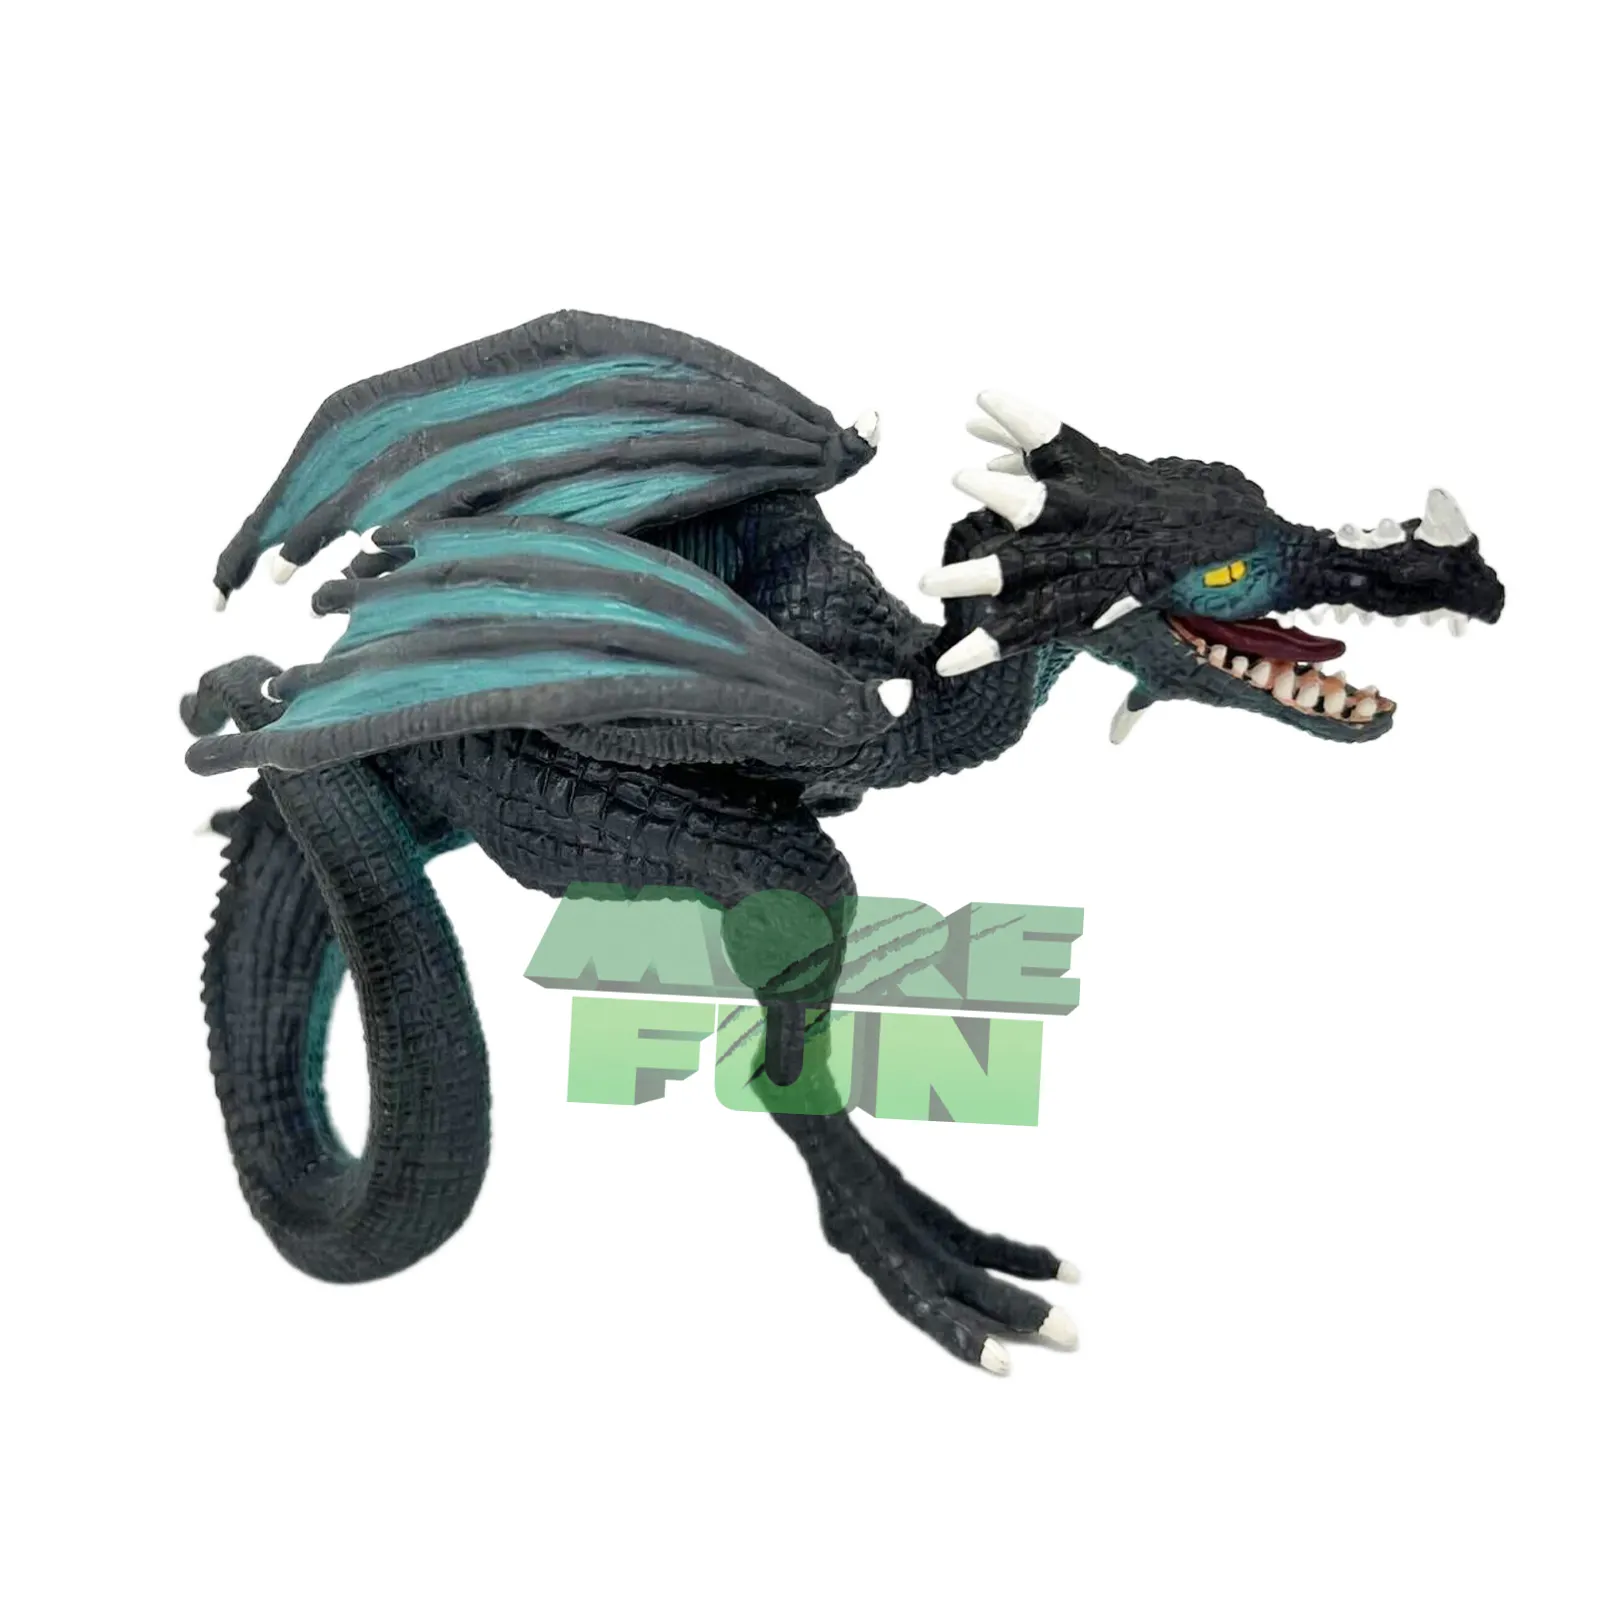 Figuras de personagens de fantasia, brinquedos realistas de dragon, figura de ação de plástico de alta qualidade, edição limitada, corredor de dragão